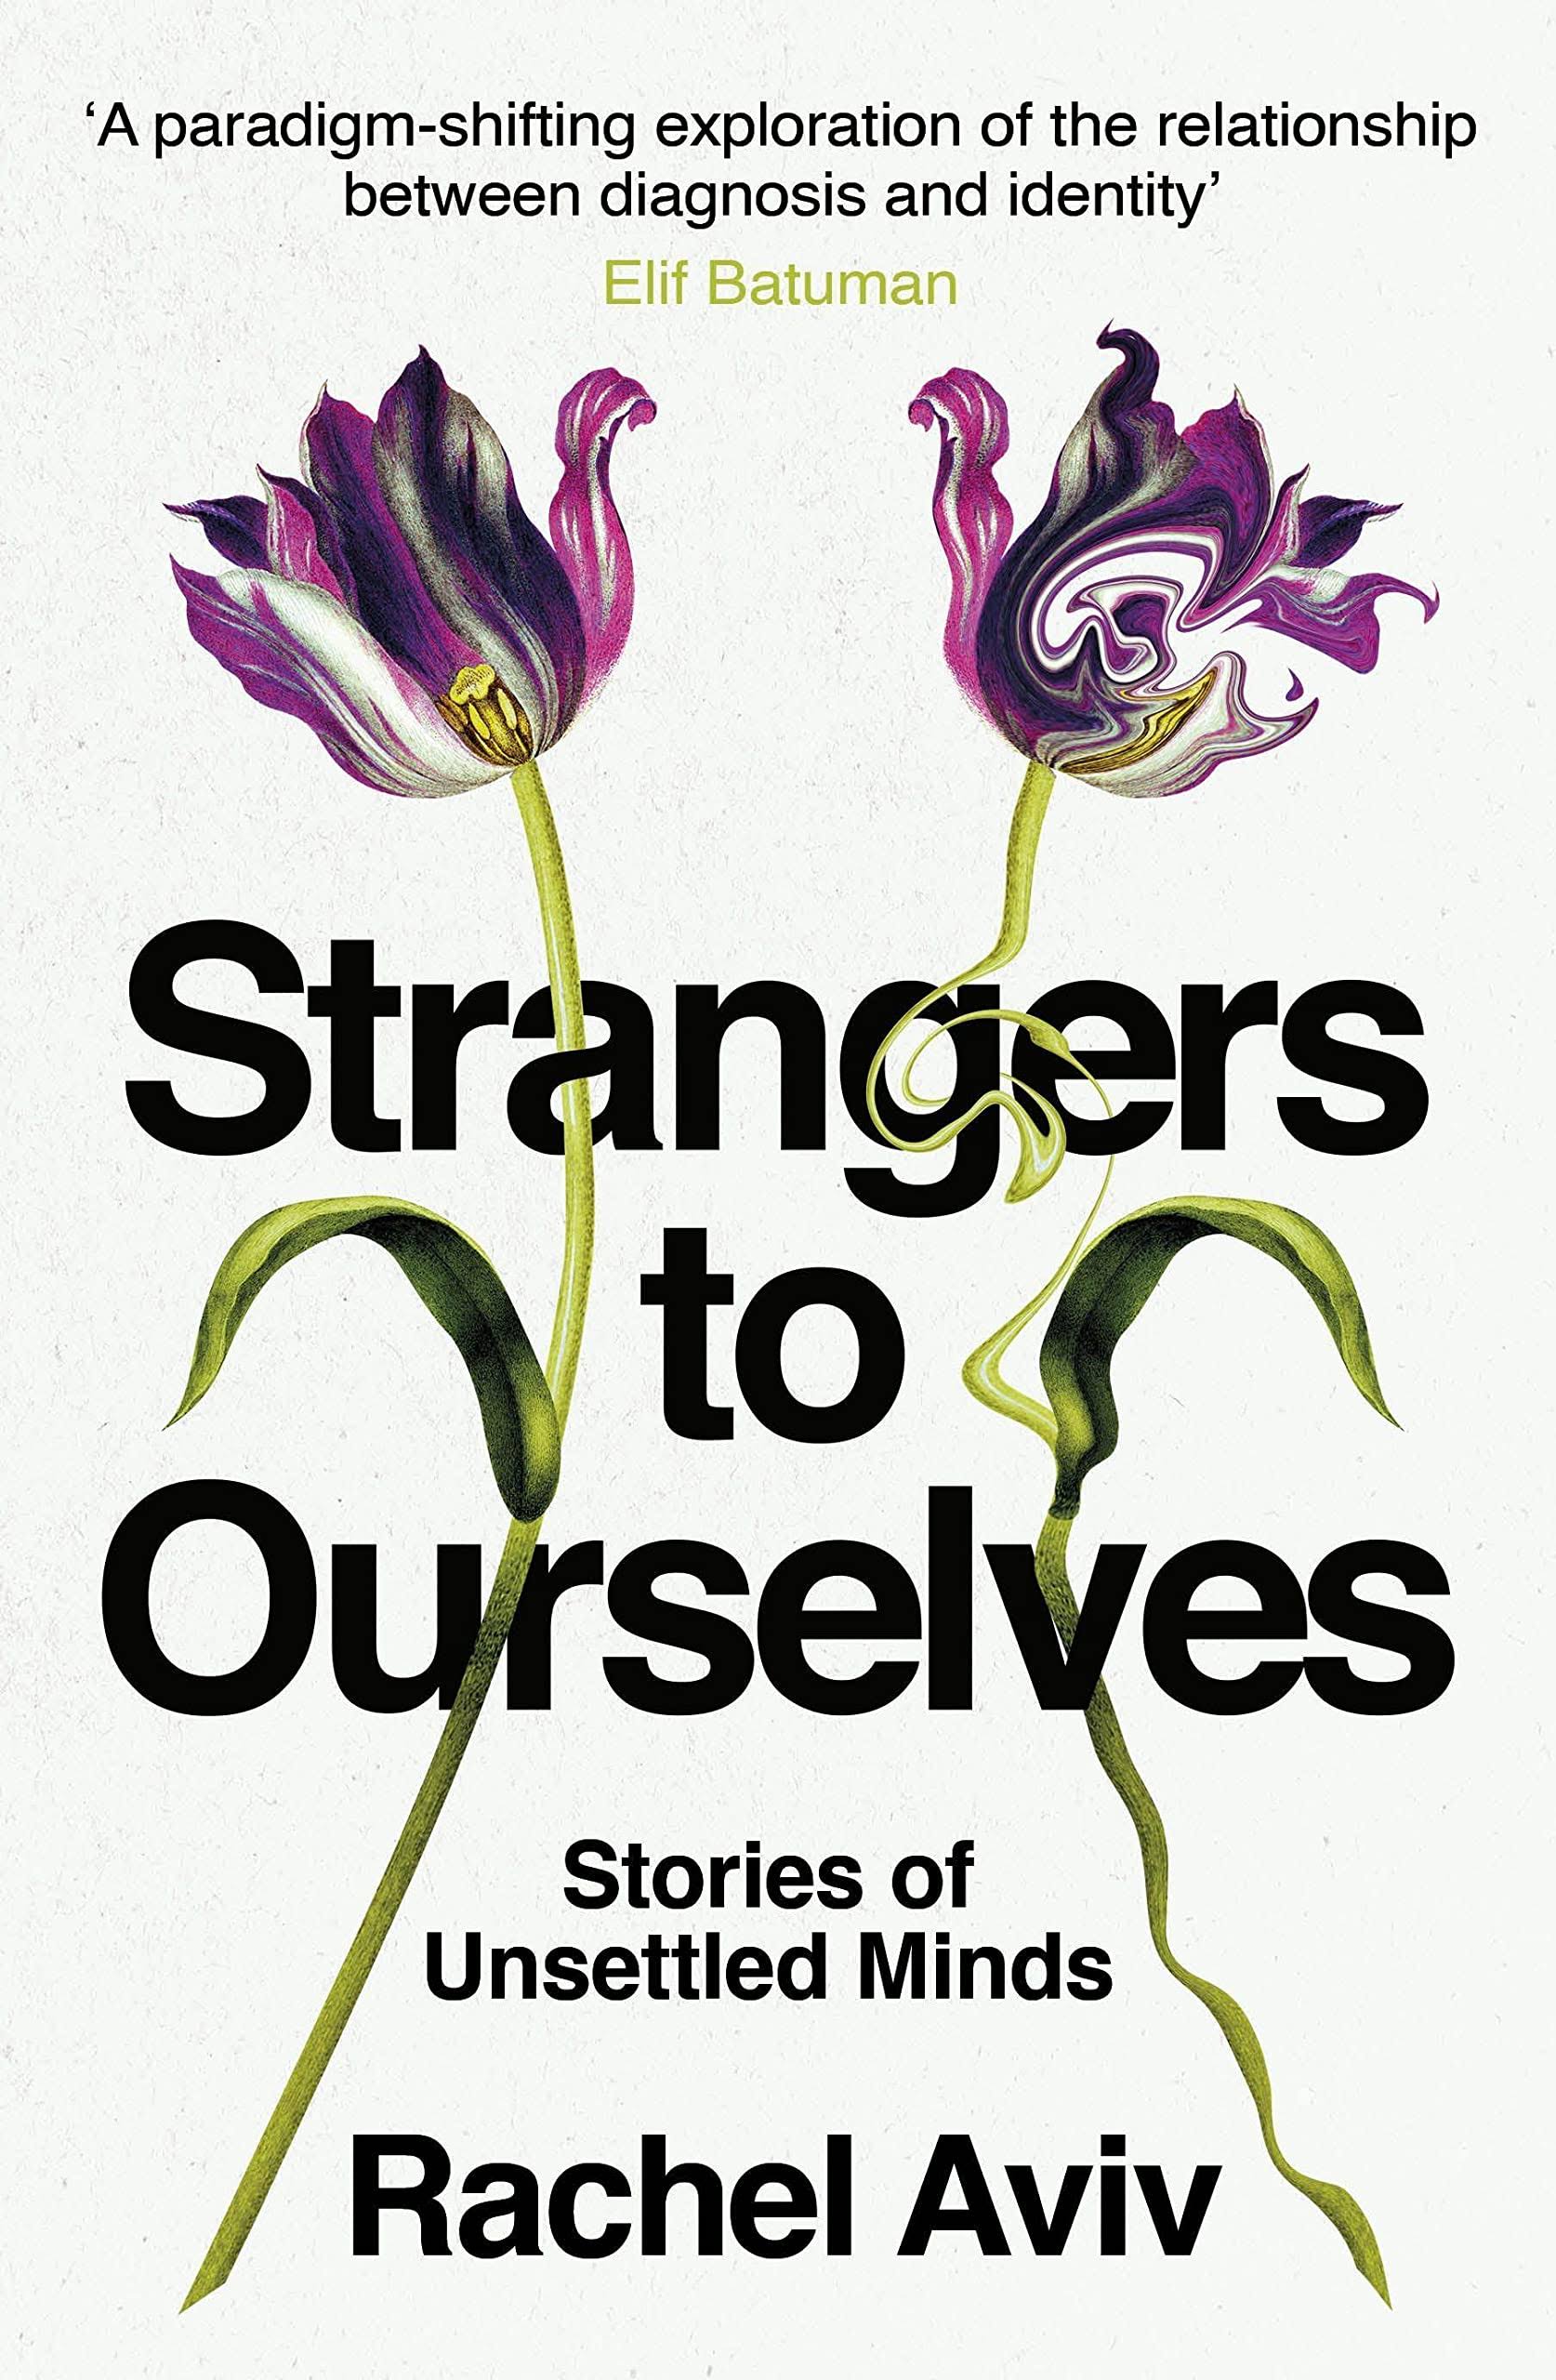 Strangers to Ourselves by Rachel Aviv